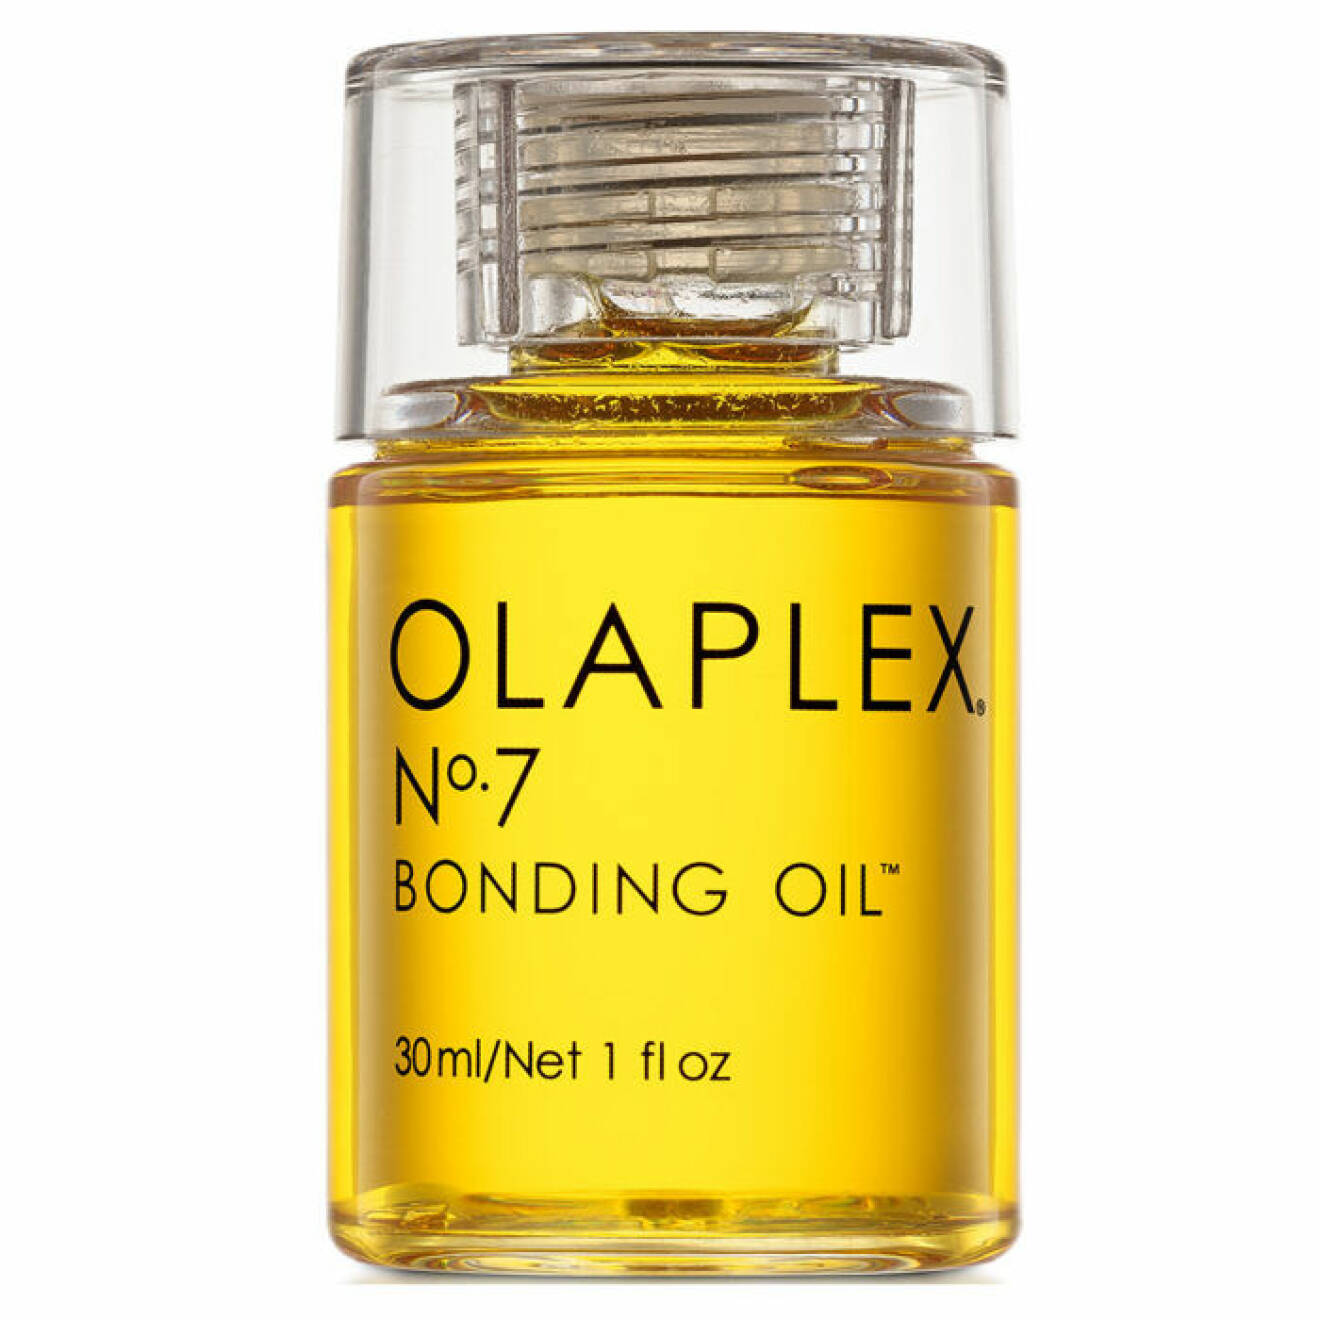 Olaplex olja för tunt hår